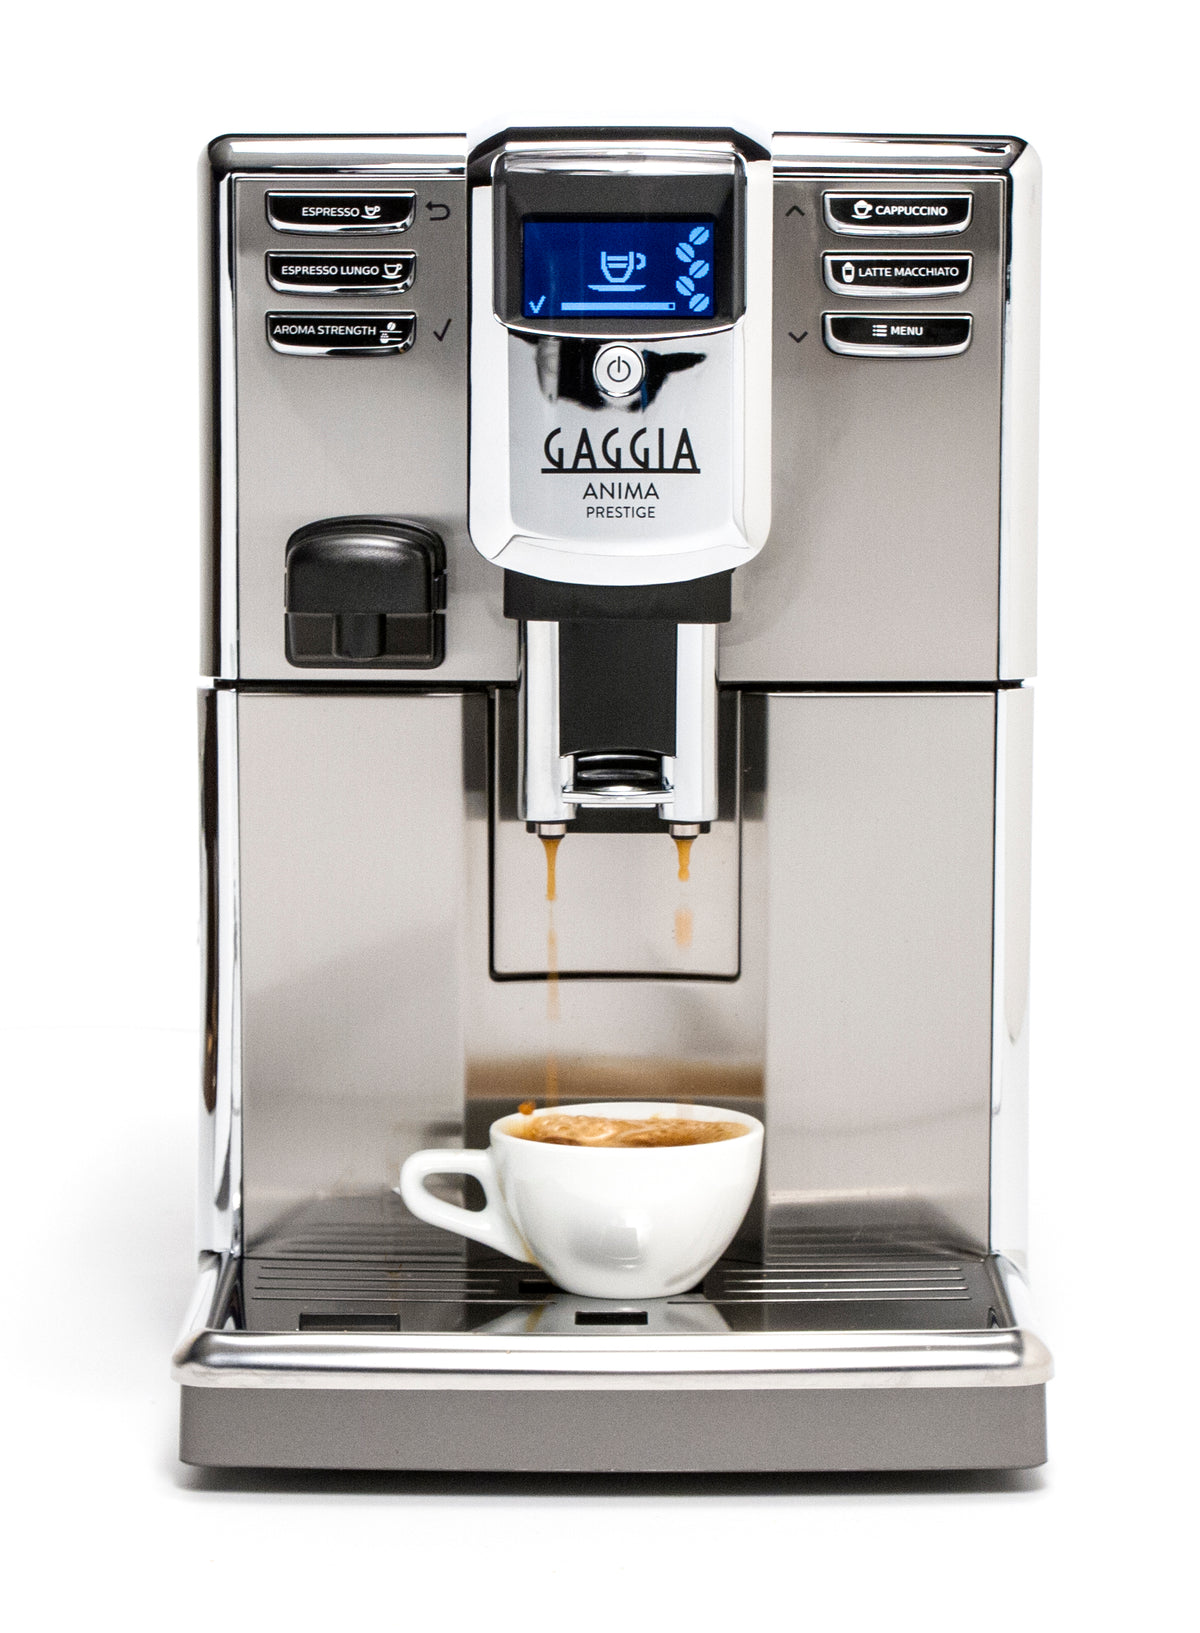 Gaggia Anima Prestige Machine - Whole Latte